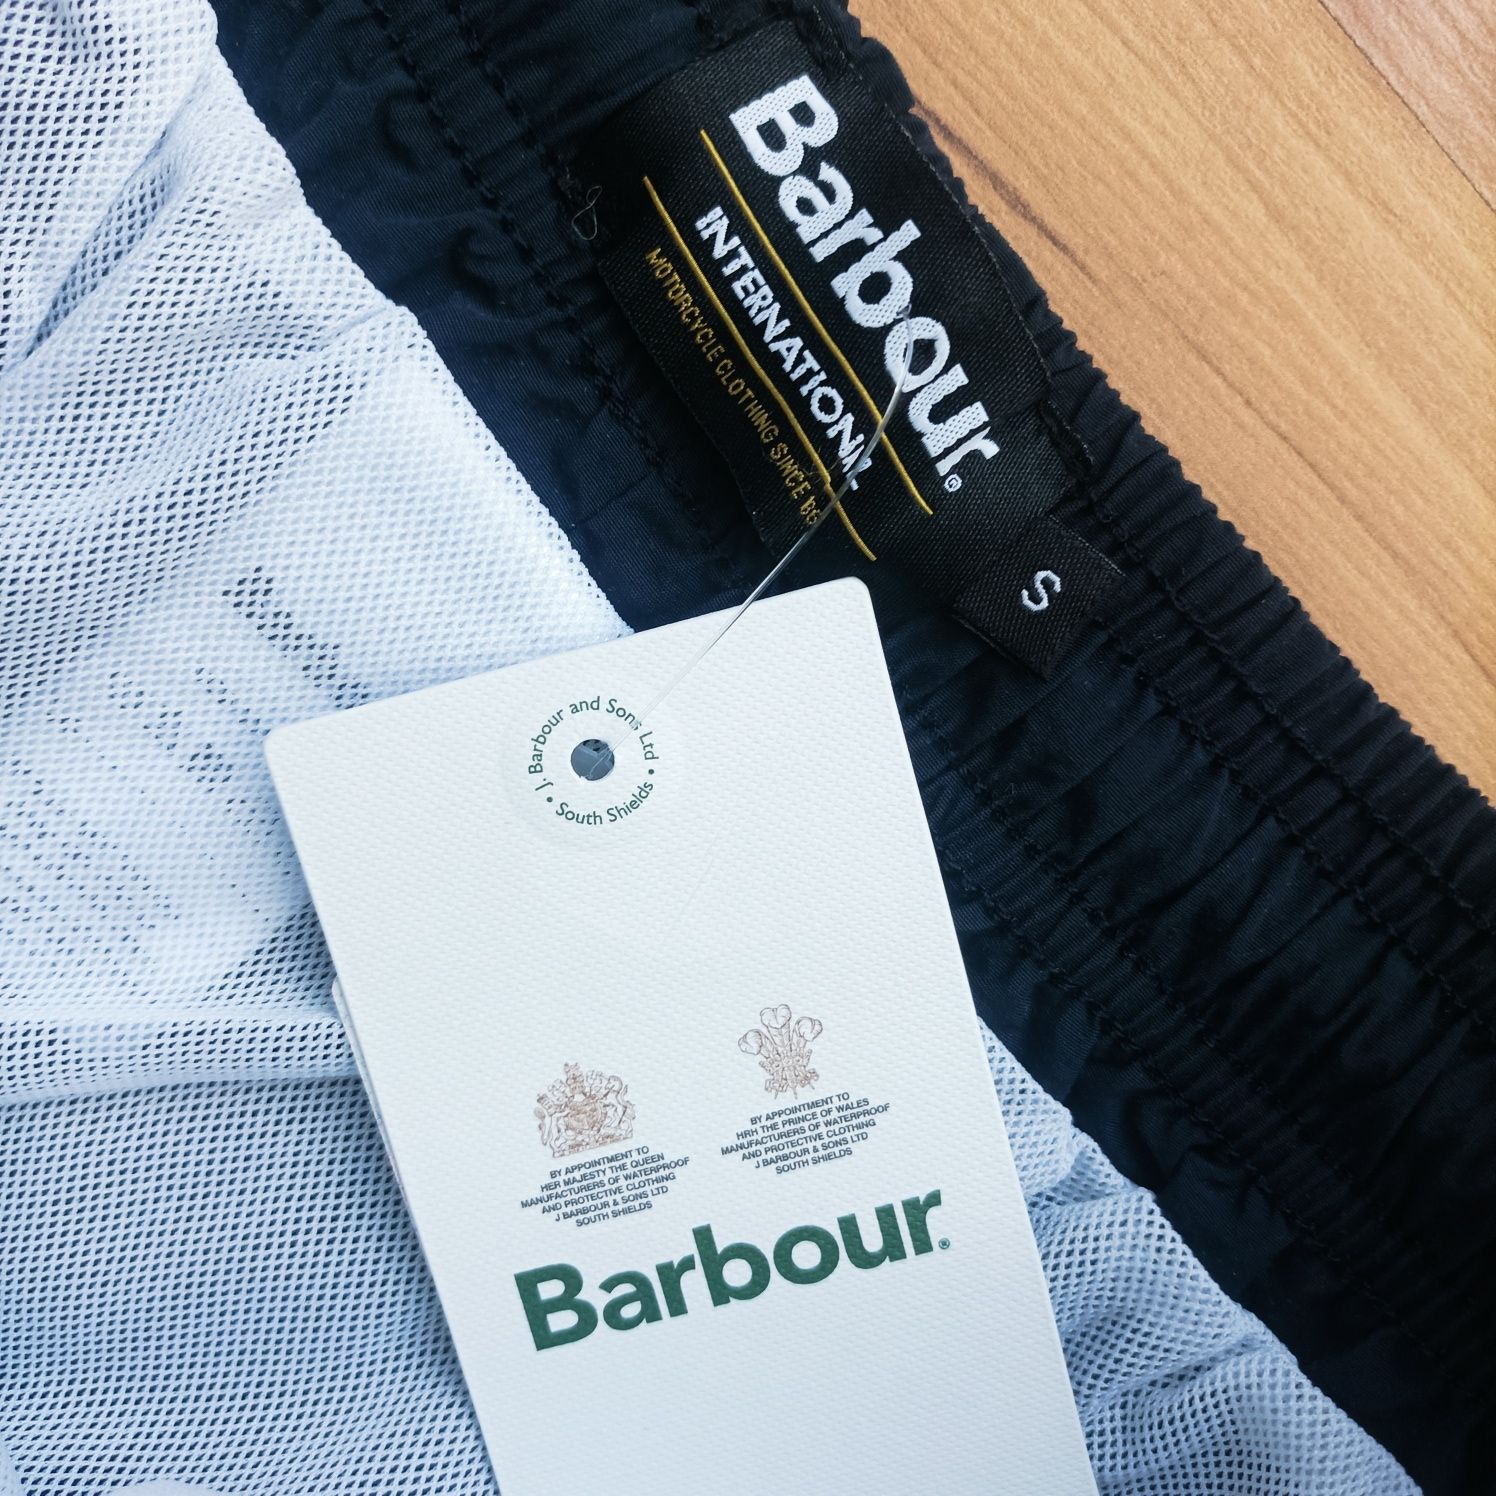 Barbour/Bluemint / S/M размер панталони за плаж